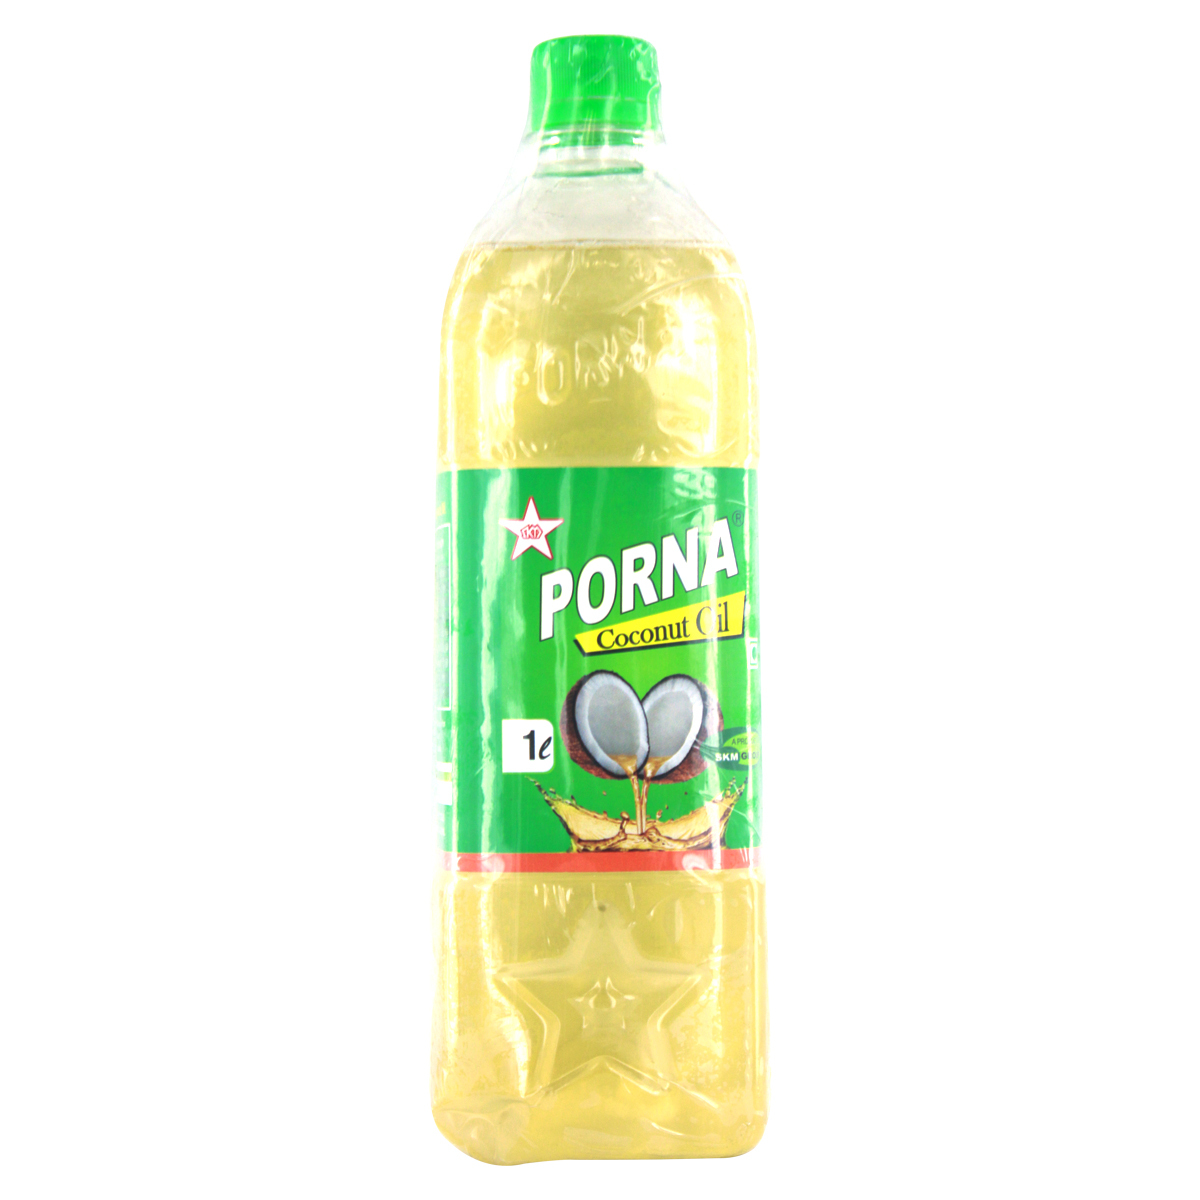 Porna Coconut Oil 1 Liter